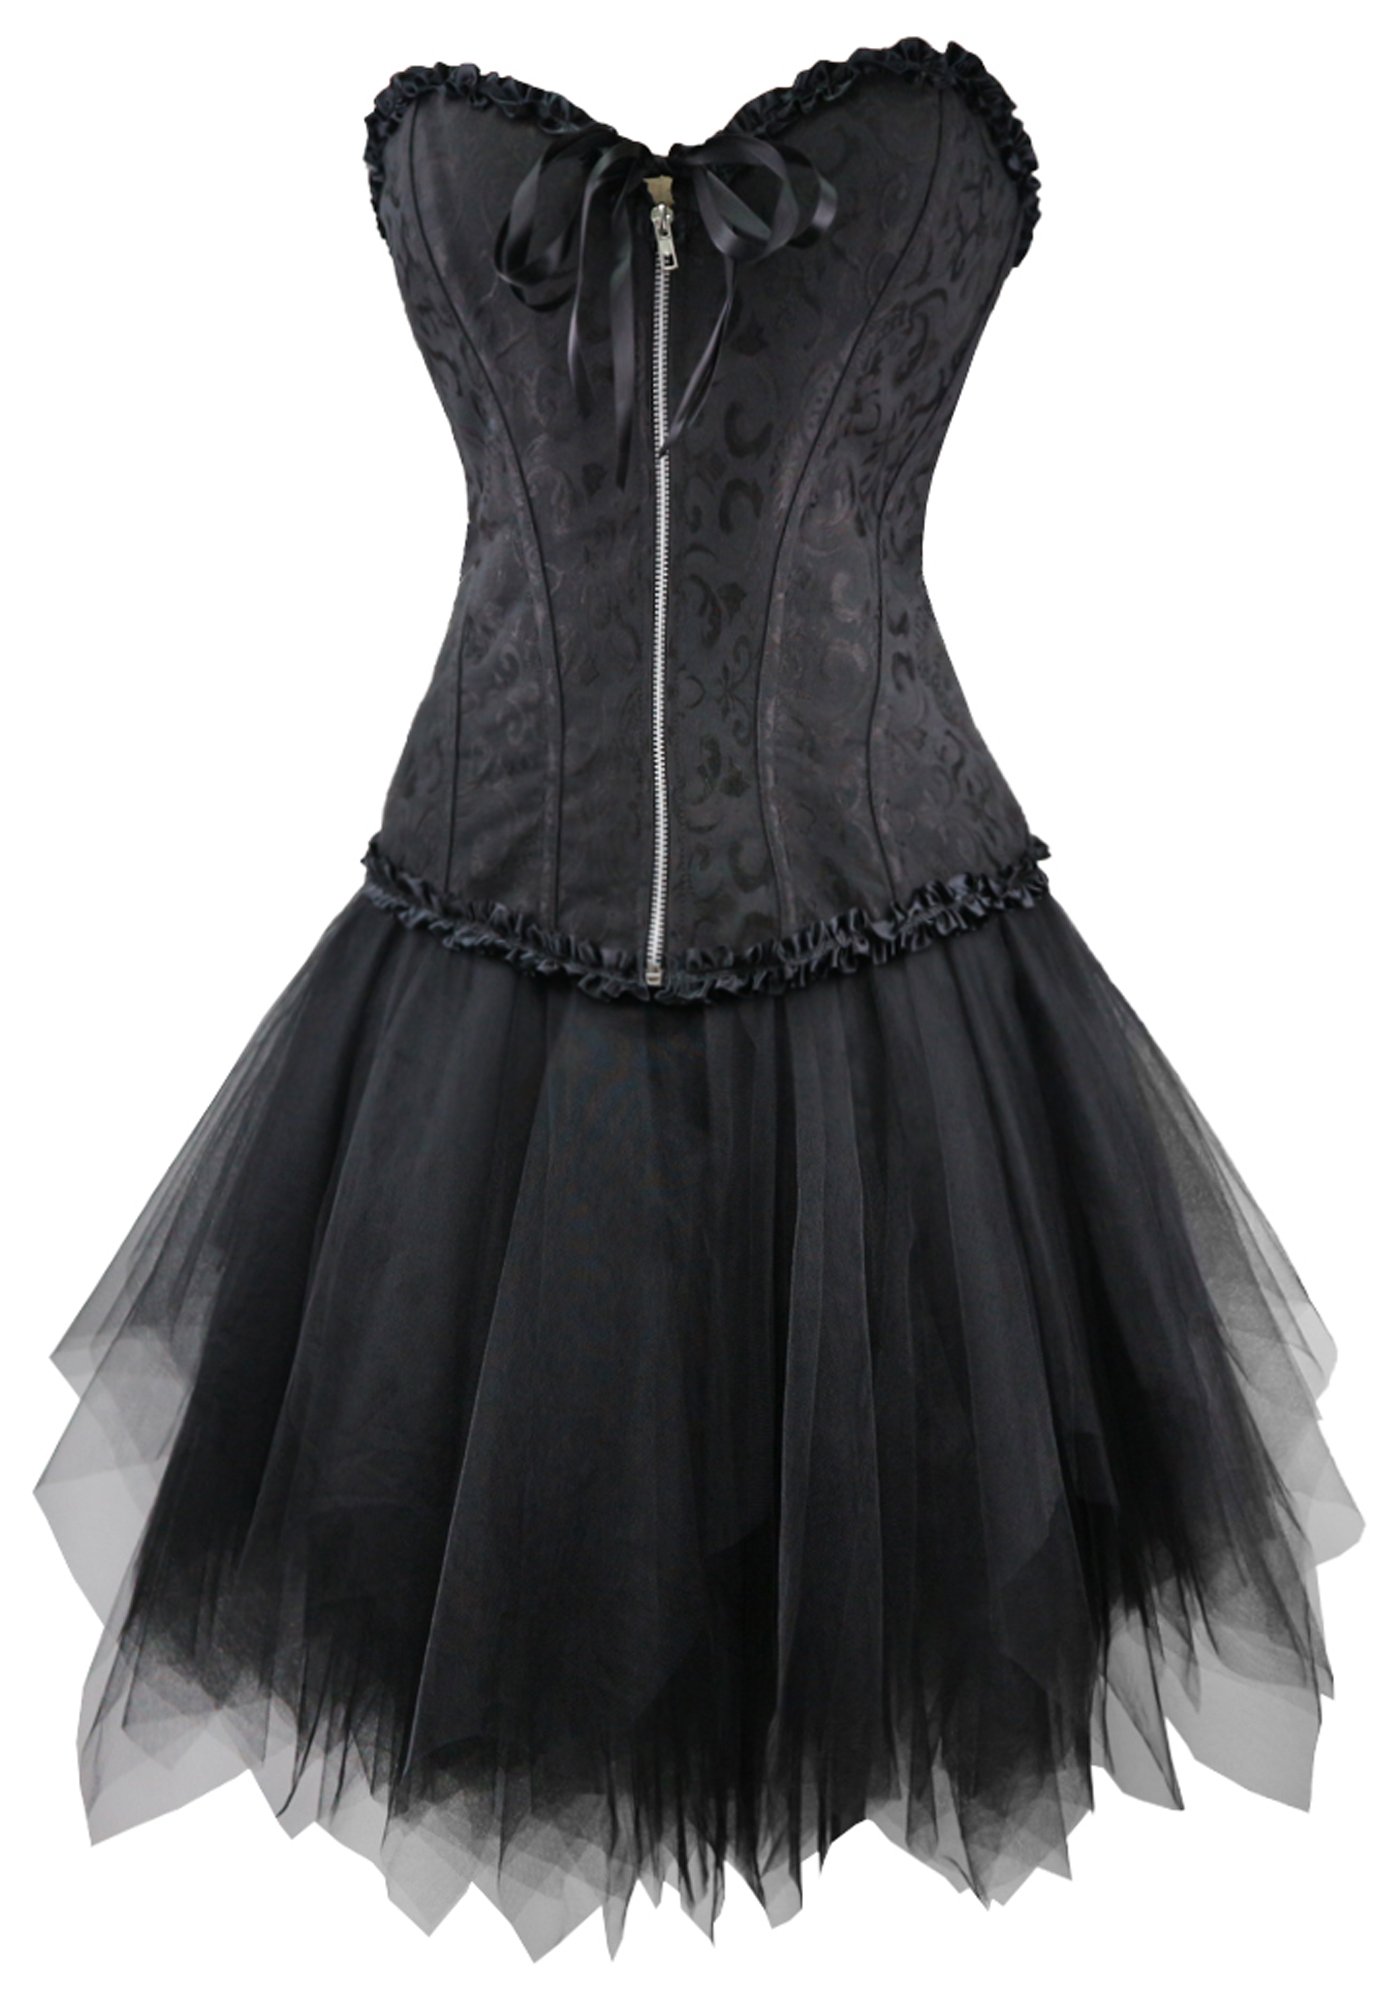 r-dessous Corsagenkleid schwarz Corsage + Mini Rock Petticoat Kleid Korsett Top Gothic Steampunk Übergrößen Groesse: L